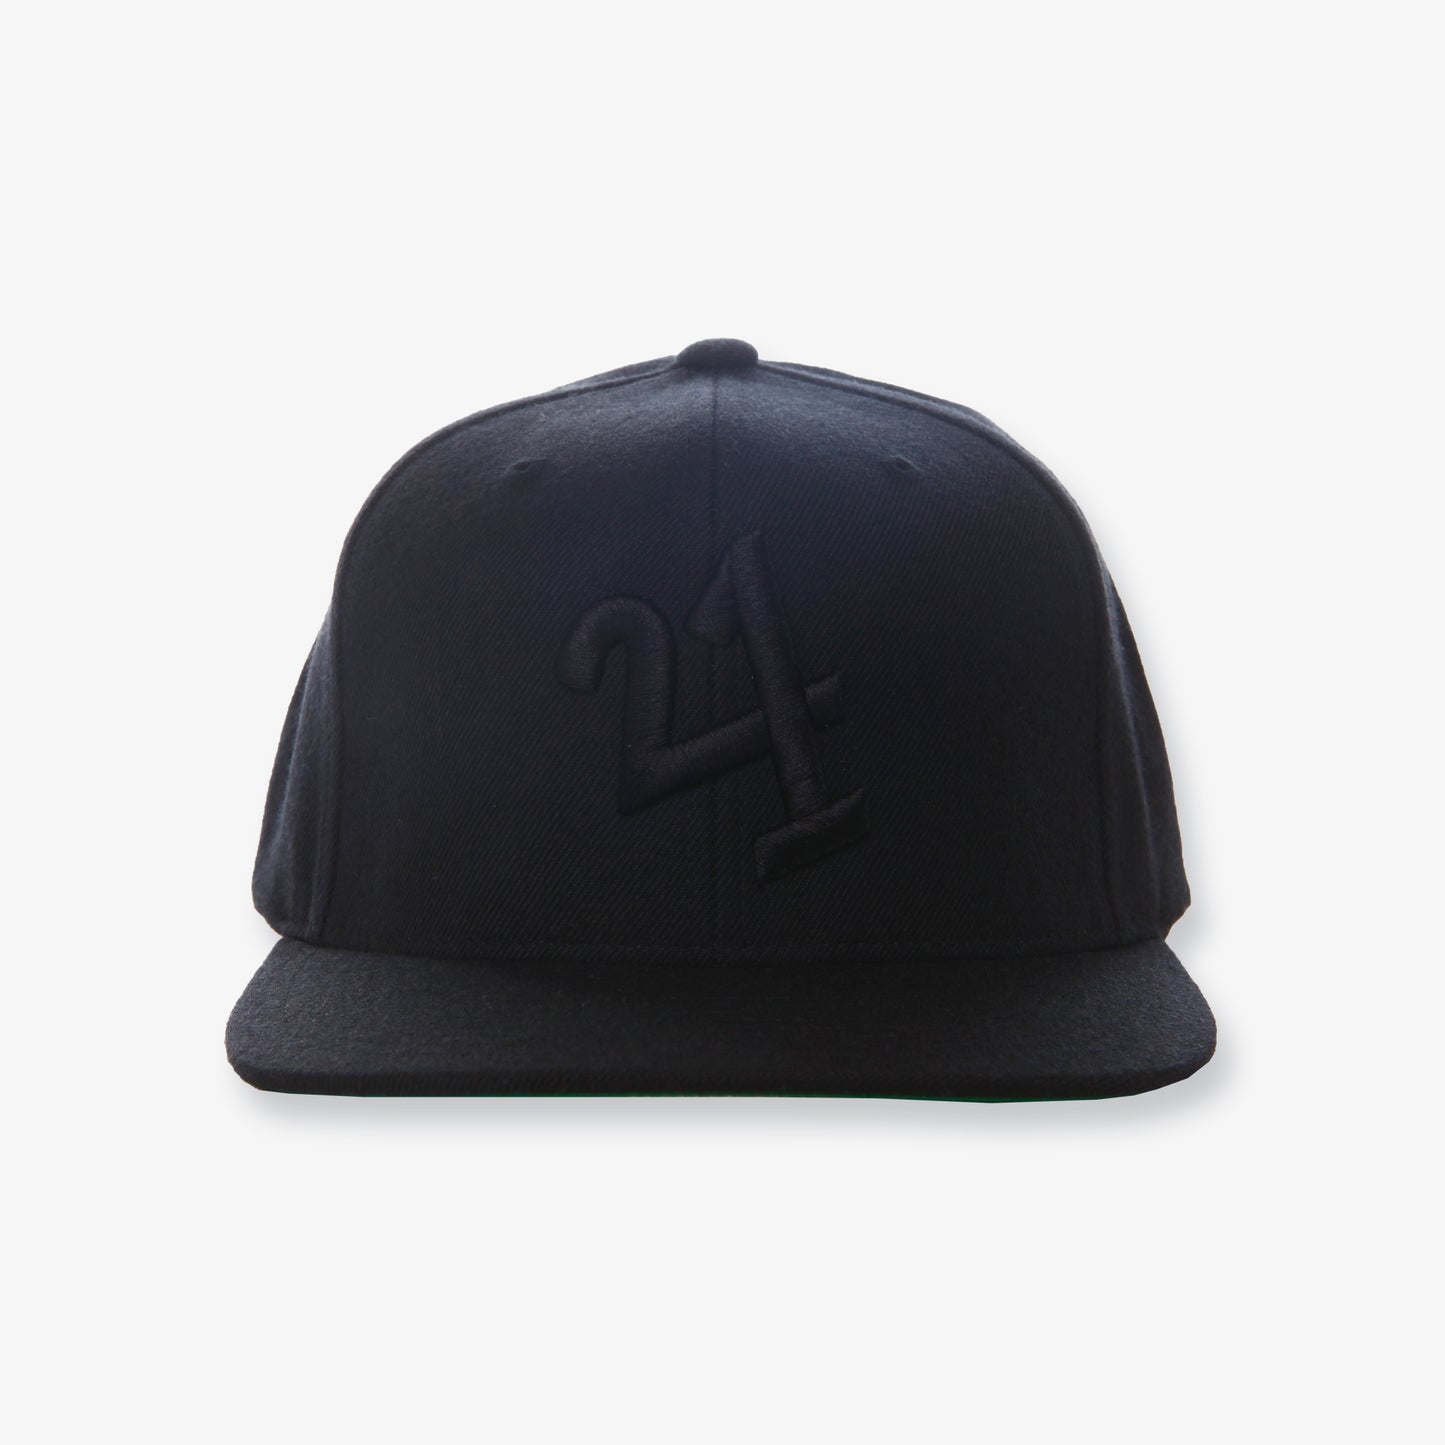 421 Classic Hat - Black